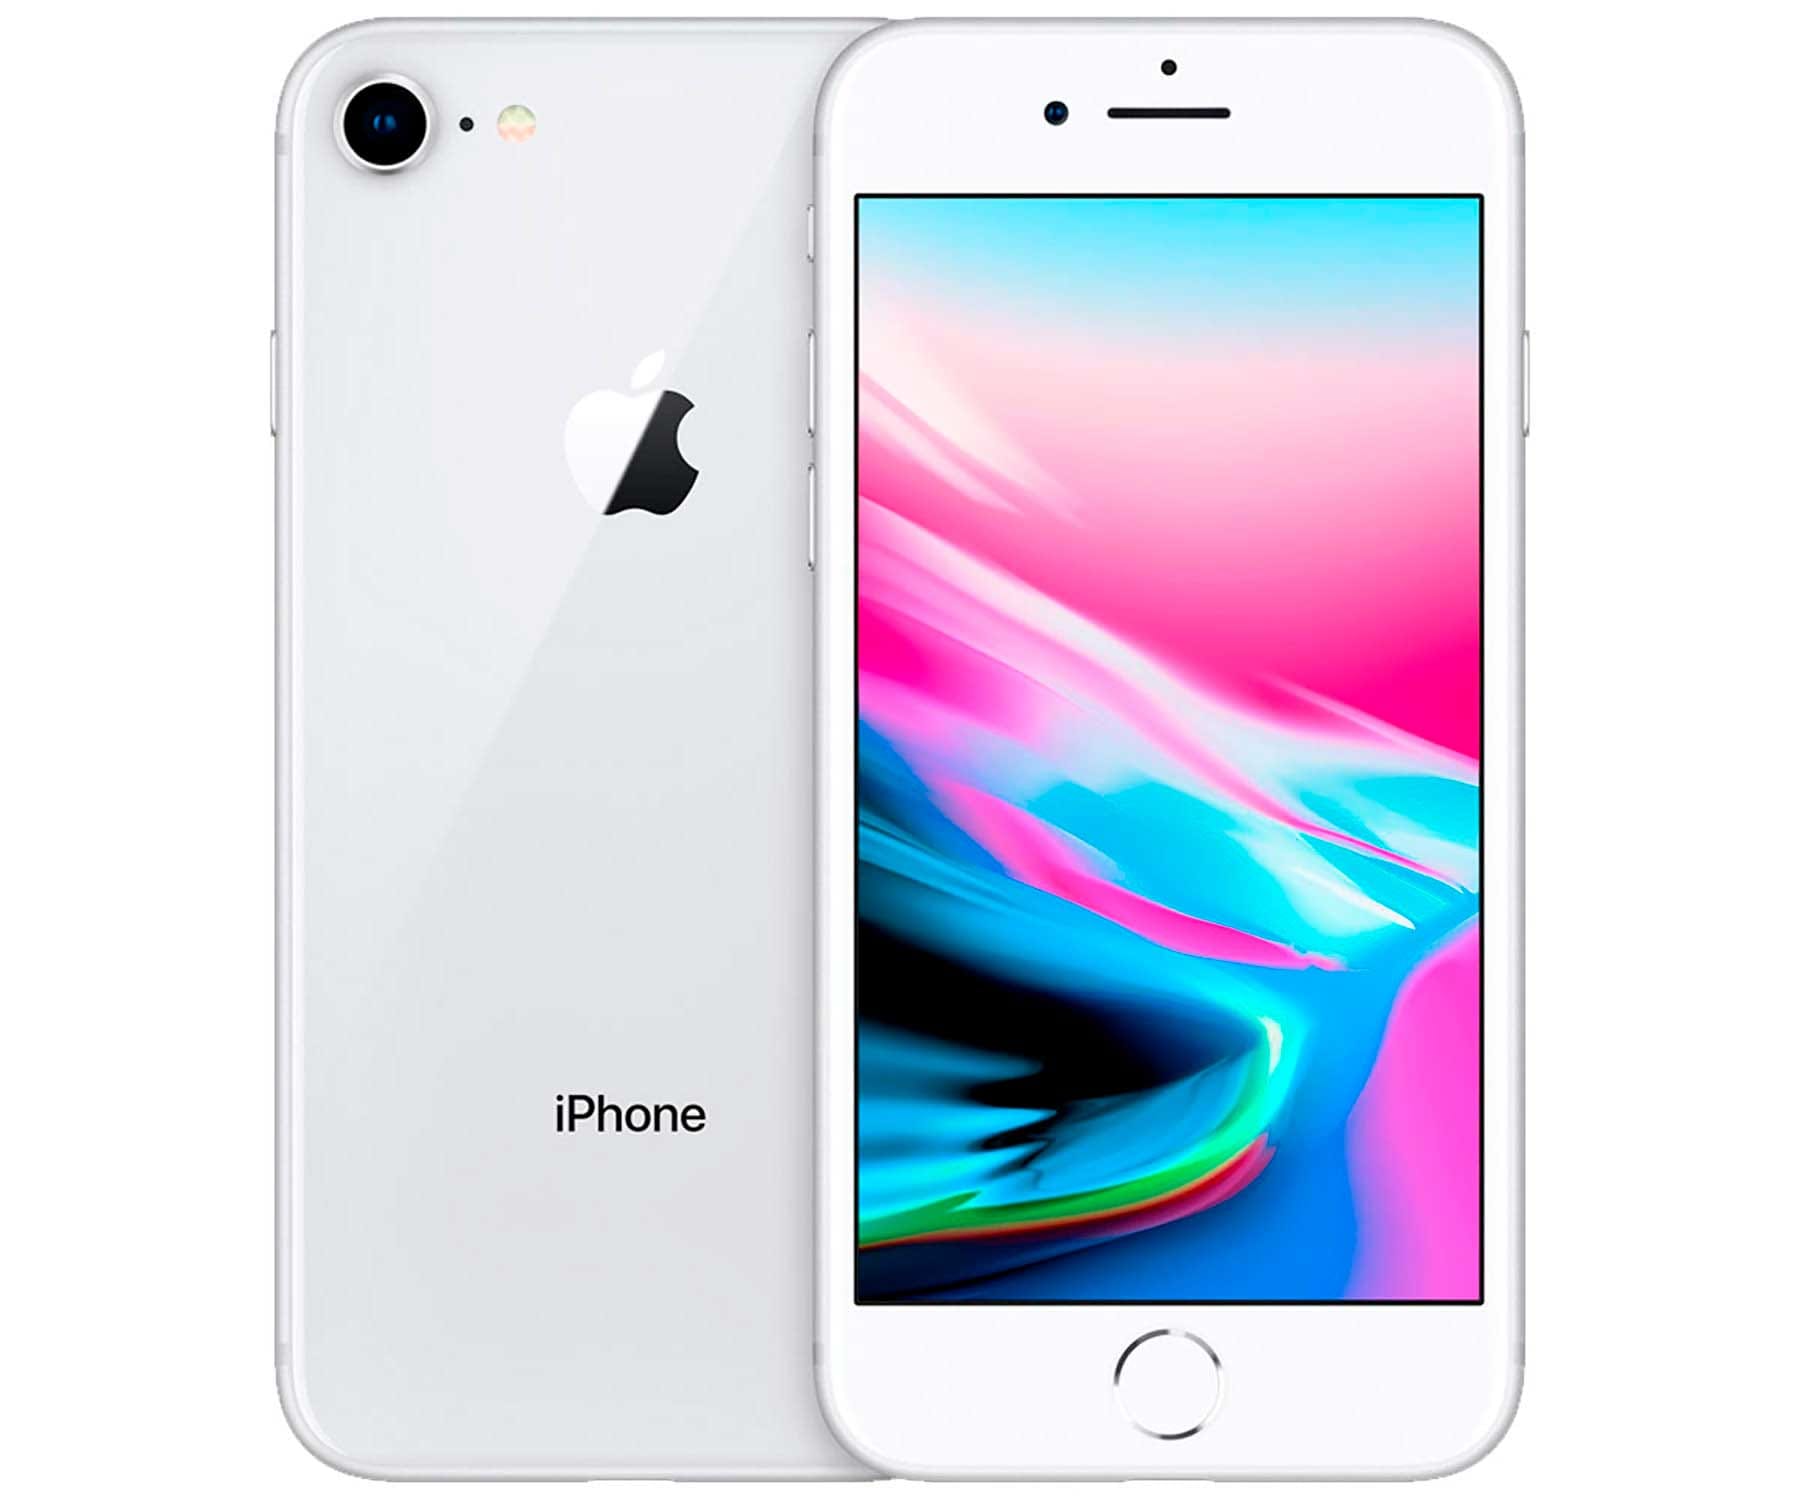 Apple iPhone 8 Silver / Reacondicionado / 2+64GB / 4.7" HD+